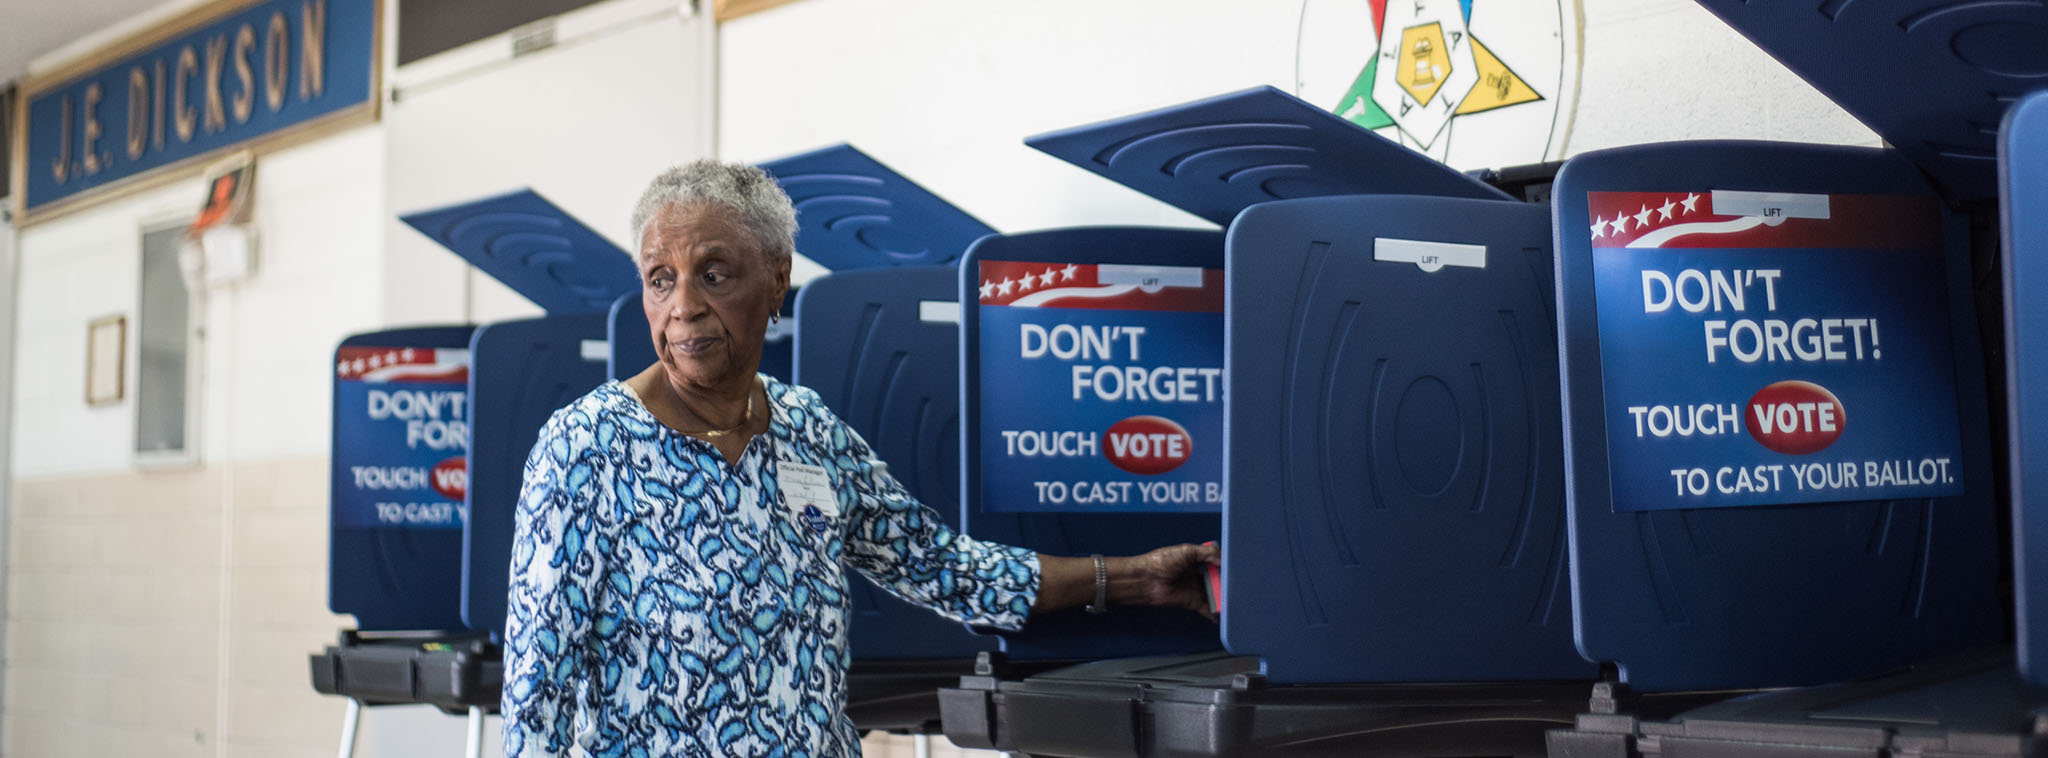 Máy bỏ phiếu bầu cử tại Mỹ bị hack thành công sau chưa đầy 90 phút